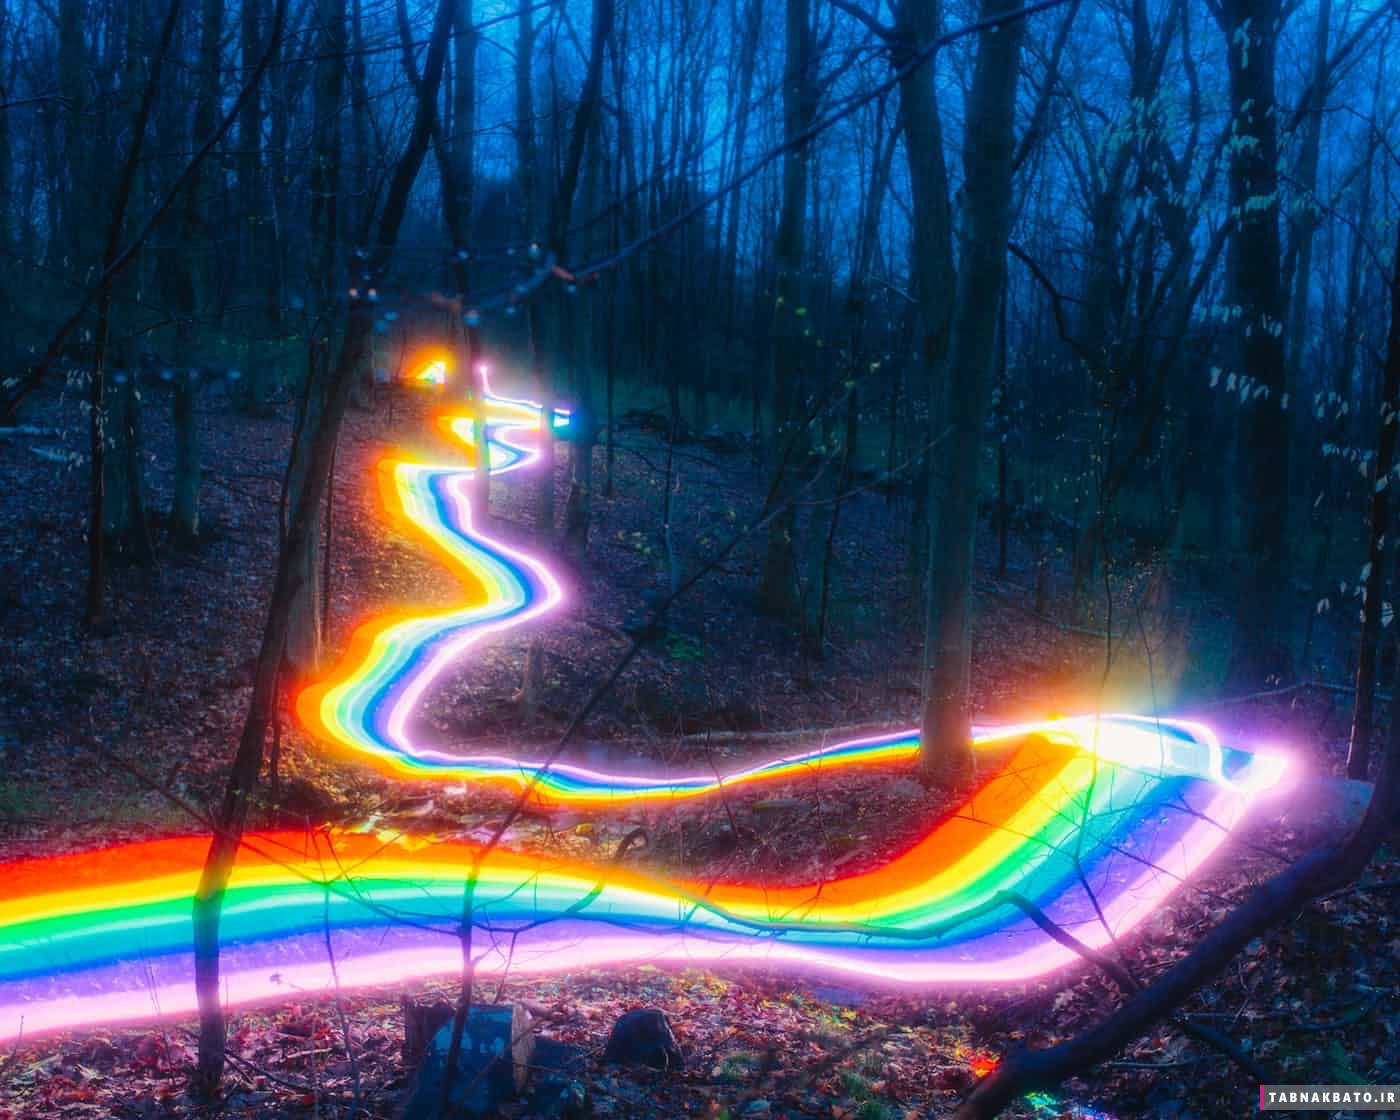 جاده رنگین کمانی زیبا در آمریکا (+عکس)